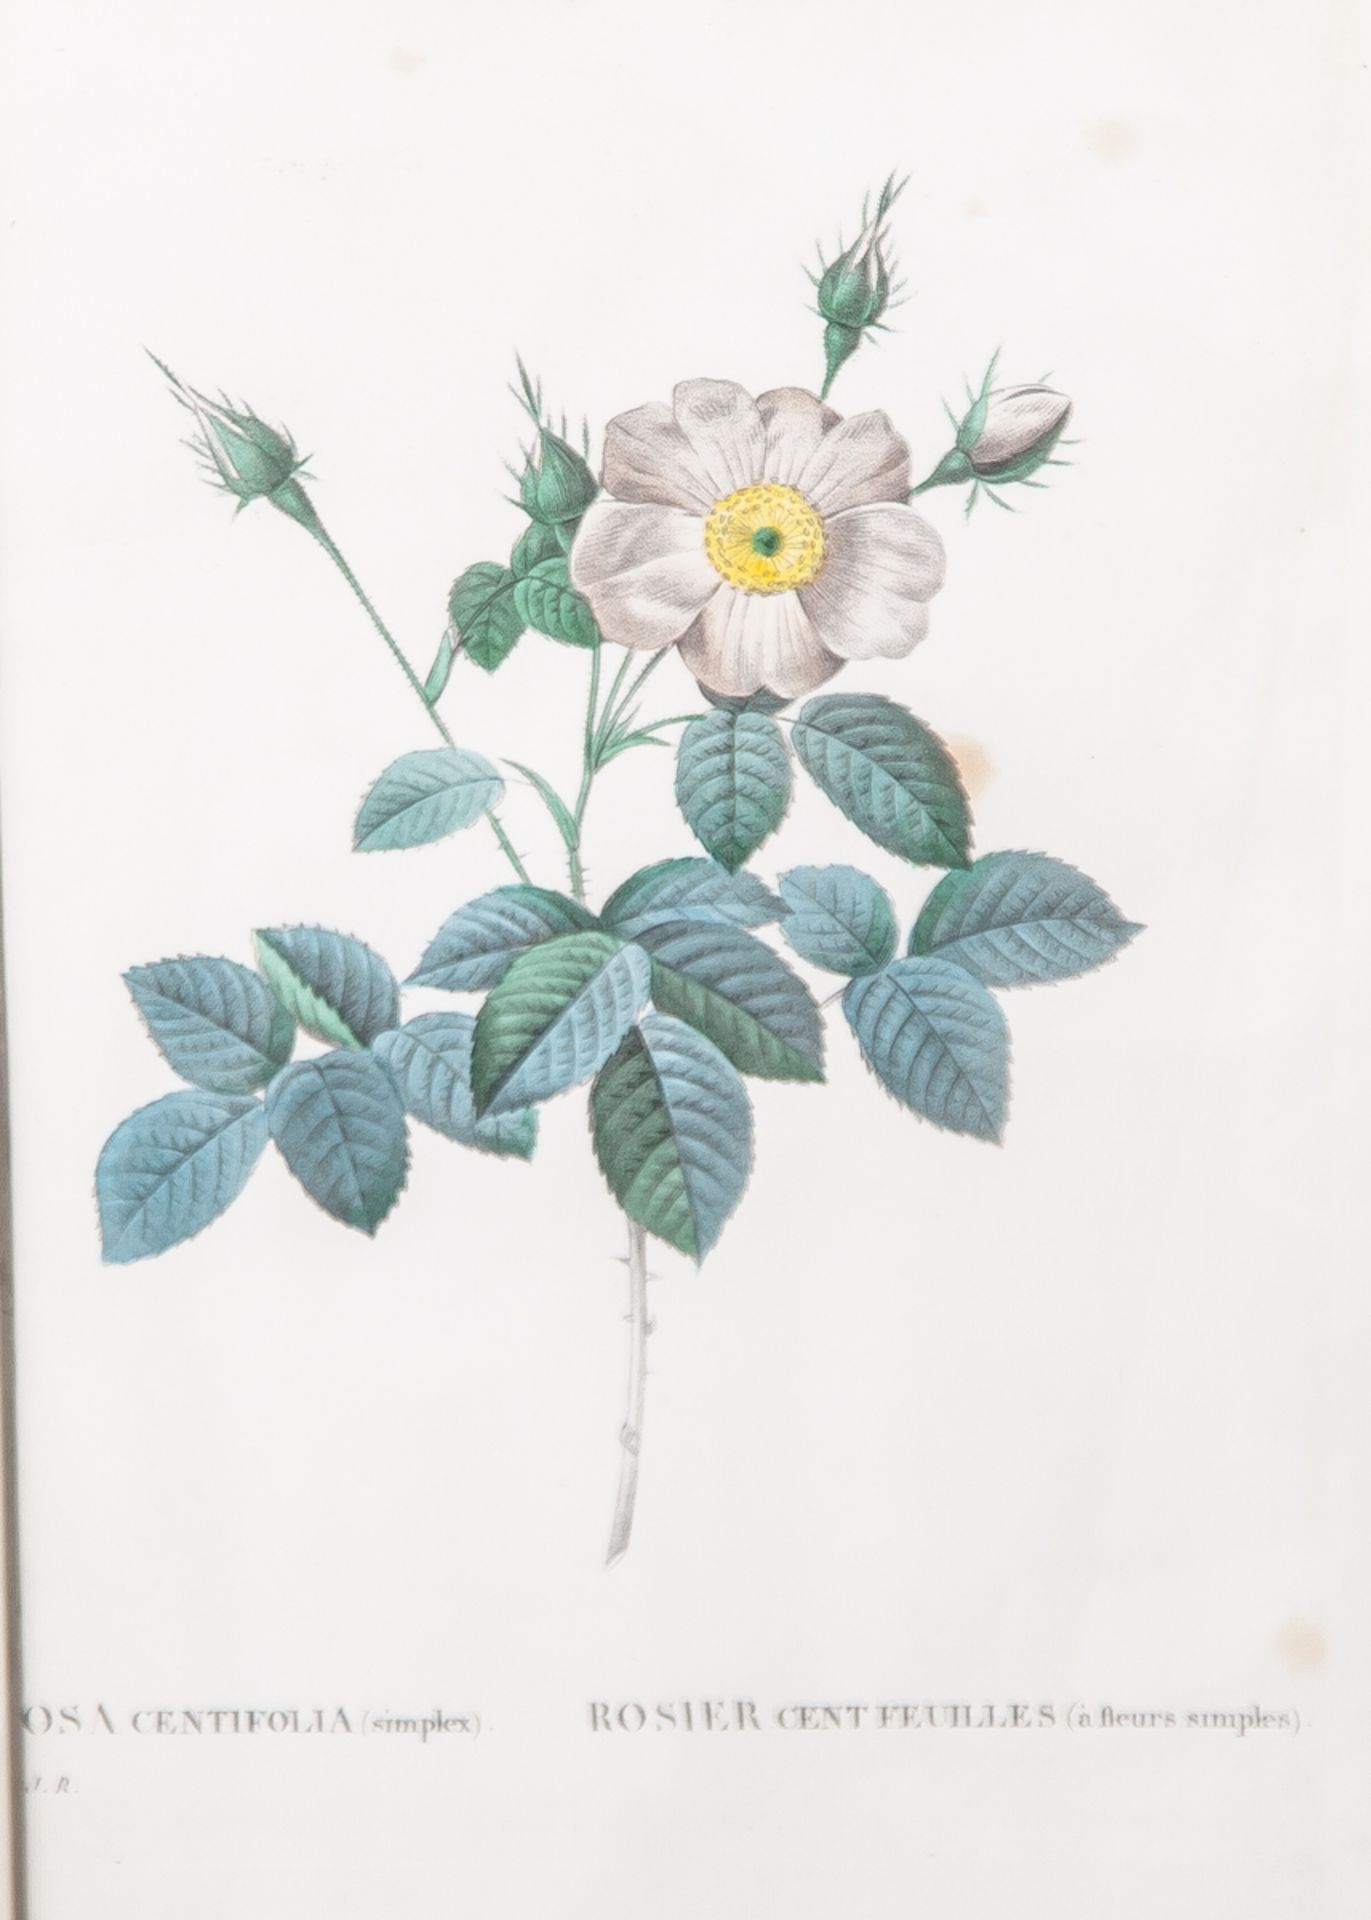 Nach Redouté, Pierre-Joseph (1759-1840), "Rosa Centifolia simplex", kolorierterKupferstich, Darst.